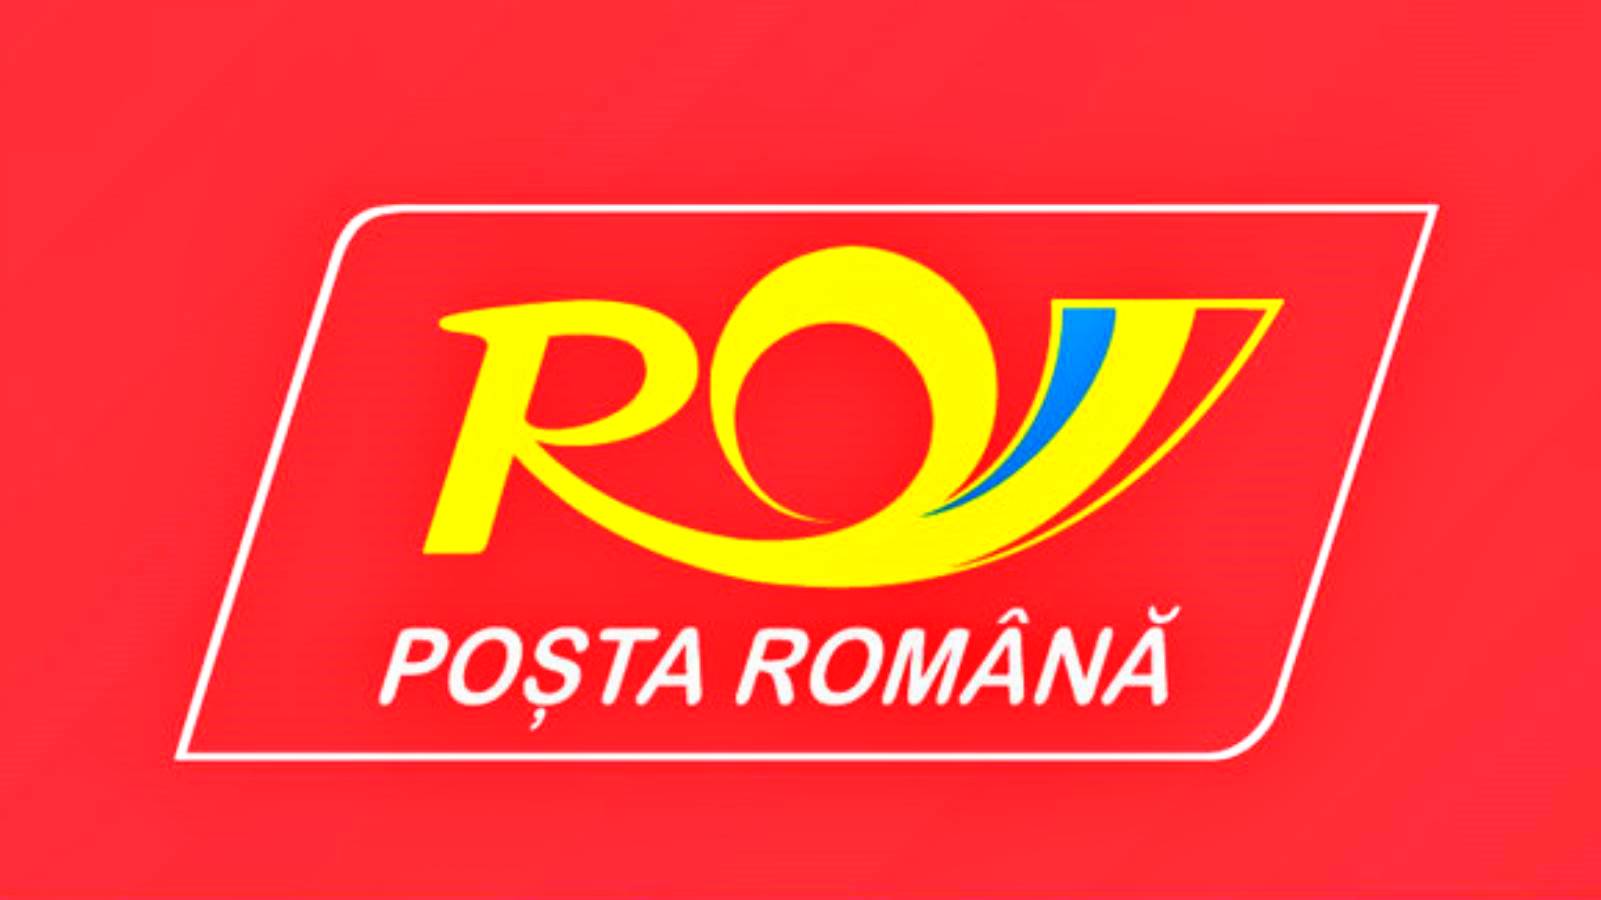 Modernisering af den rumænske post fortsætter meddelelse lavet af selskab